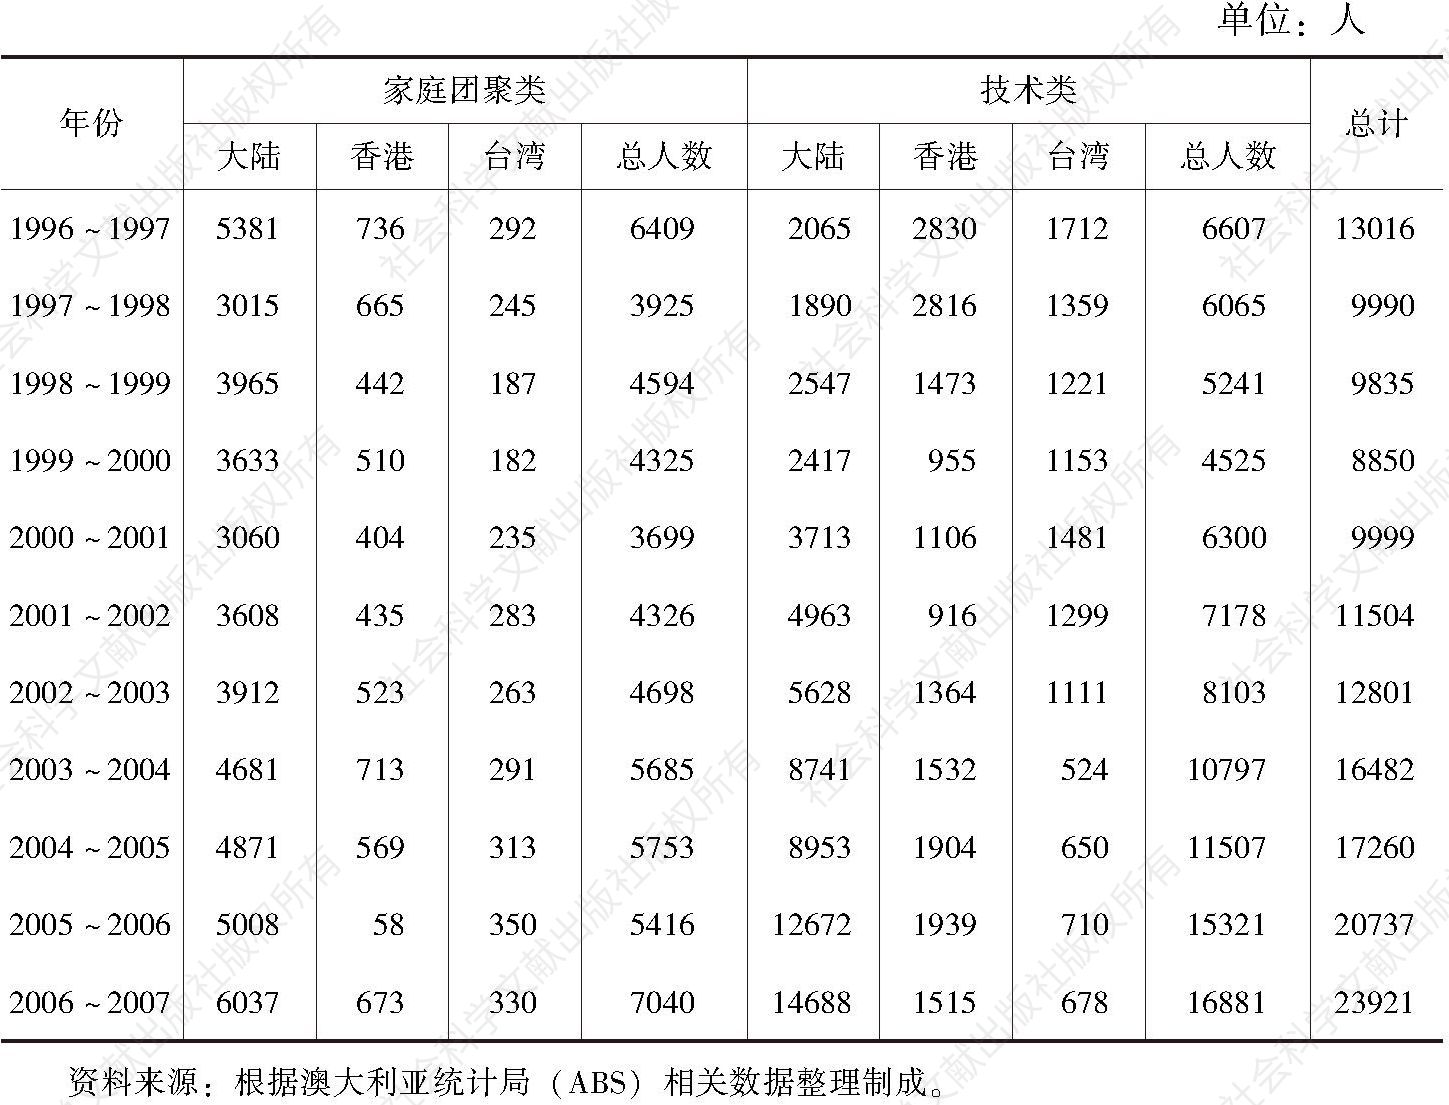 表4-6 1996～2007年澳大利亚华人新移民的人数情况